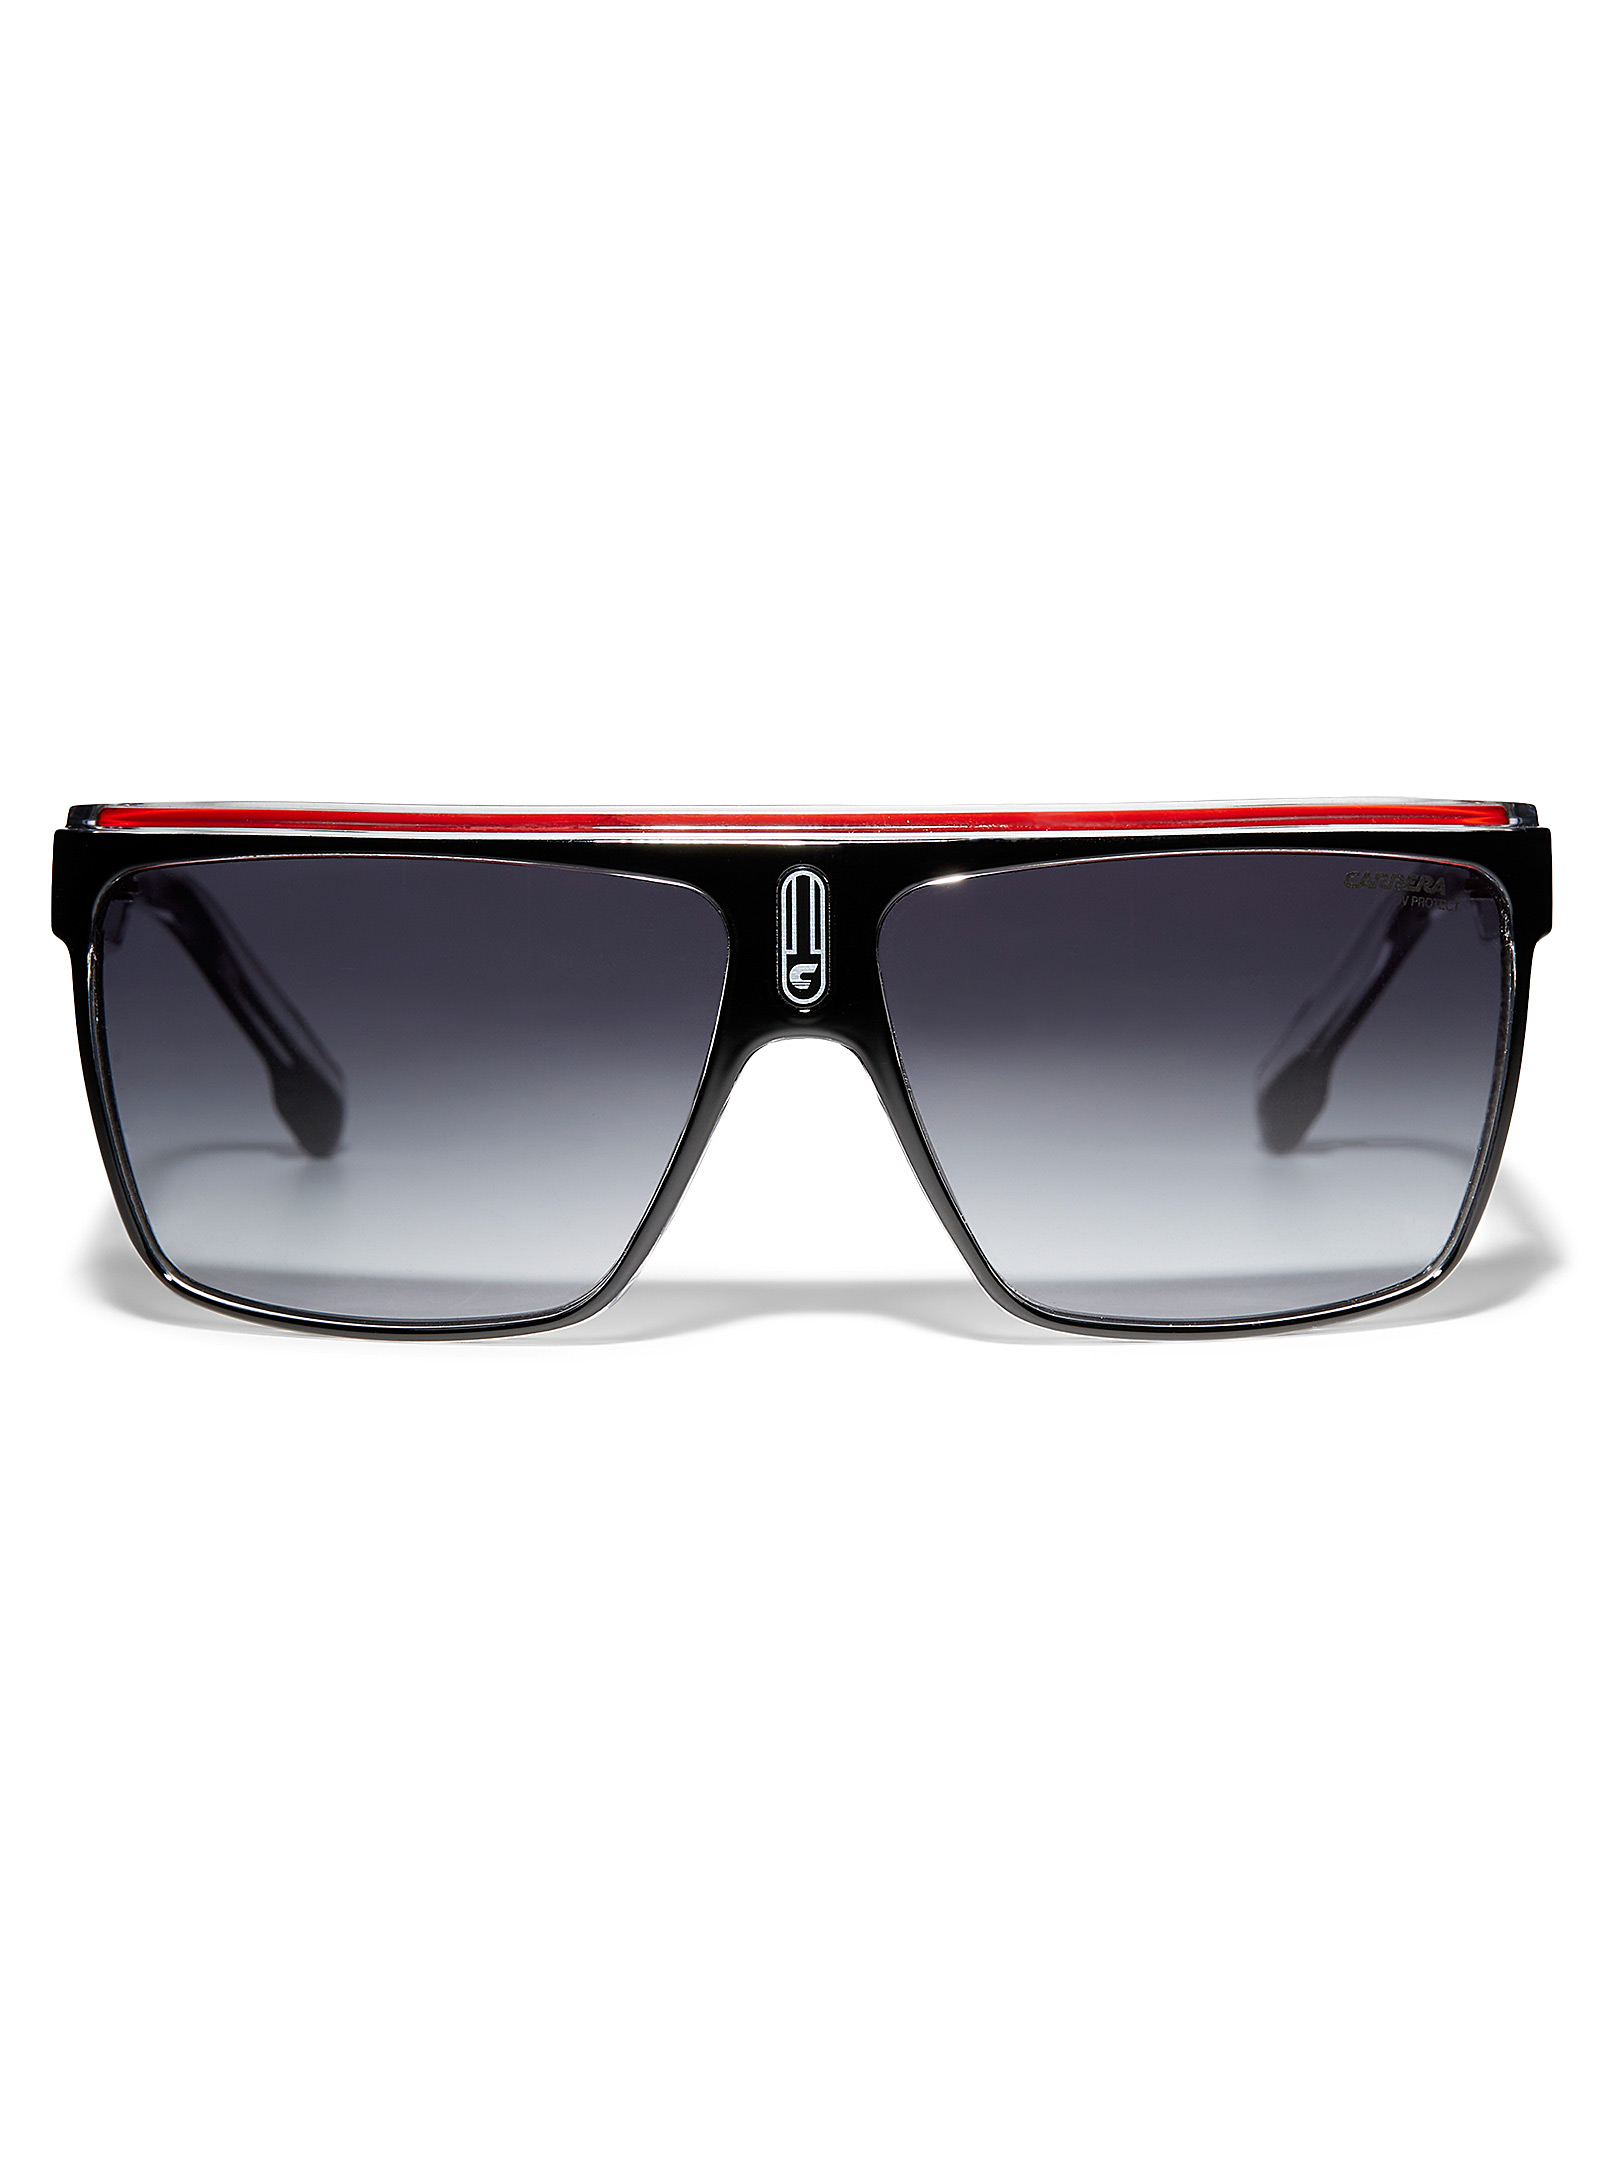 Carrera Red Accent Square Sunglasses In Black